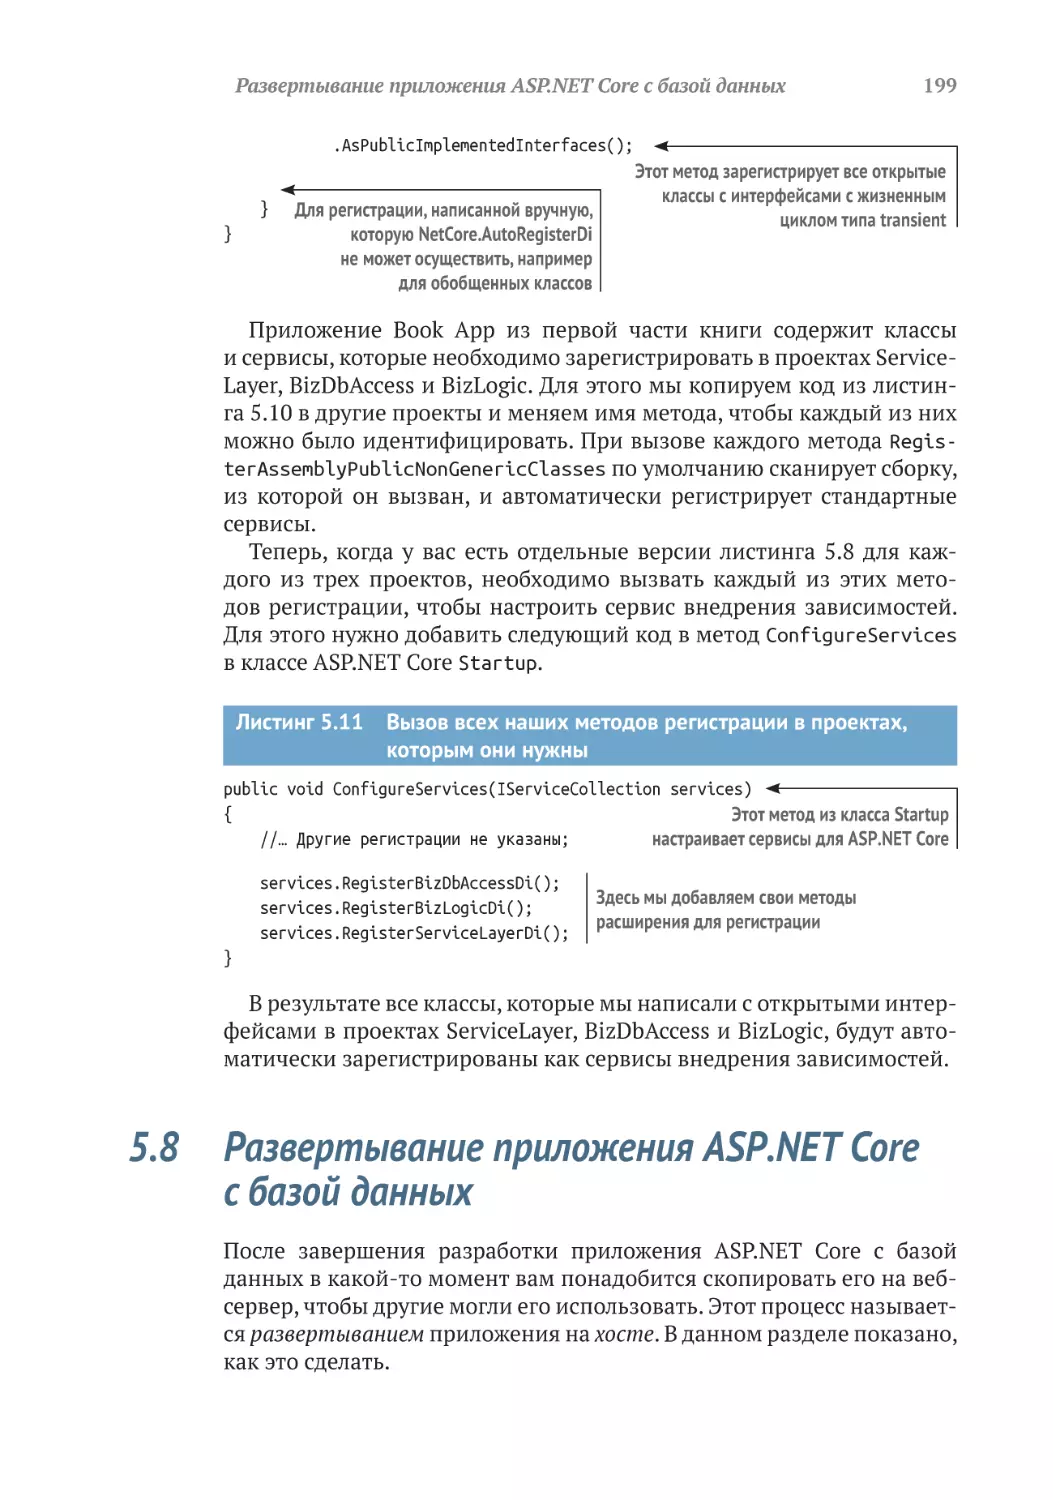 5.8	Развертывание приложения ASP.NET Core с базой данных